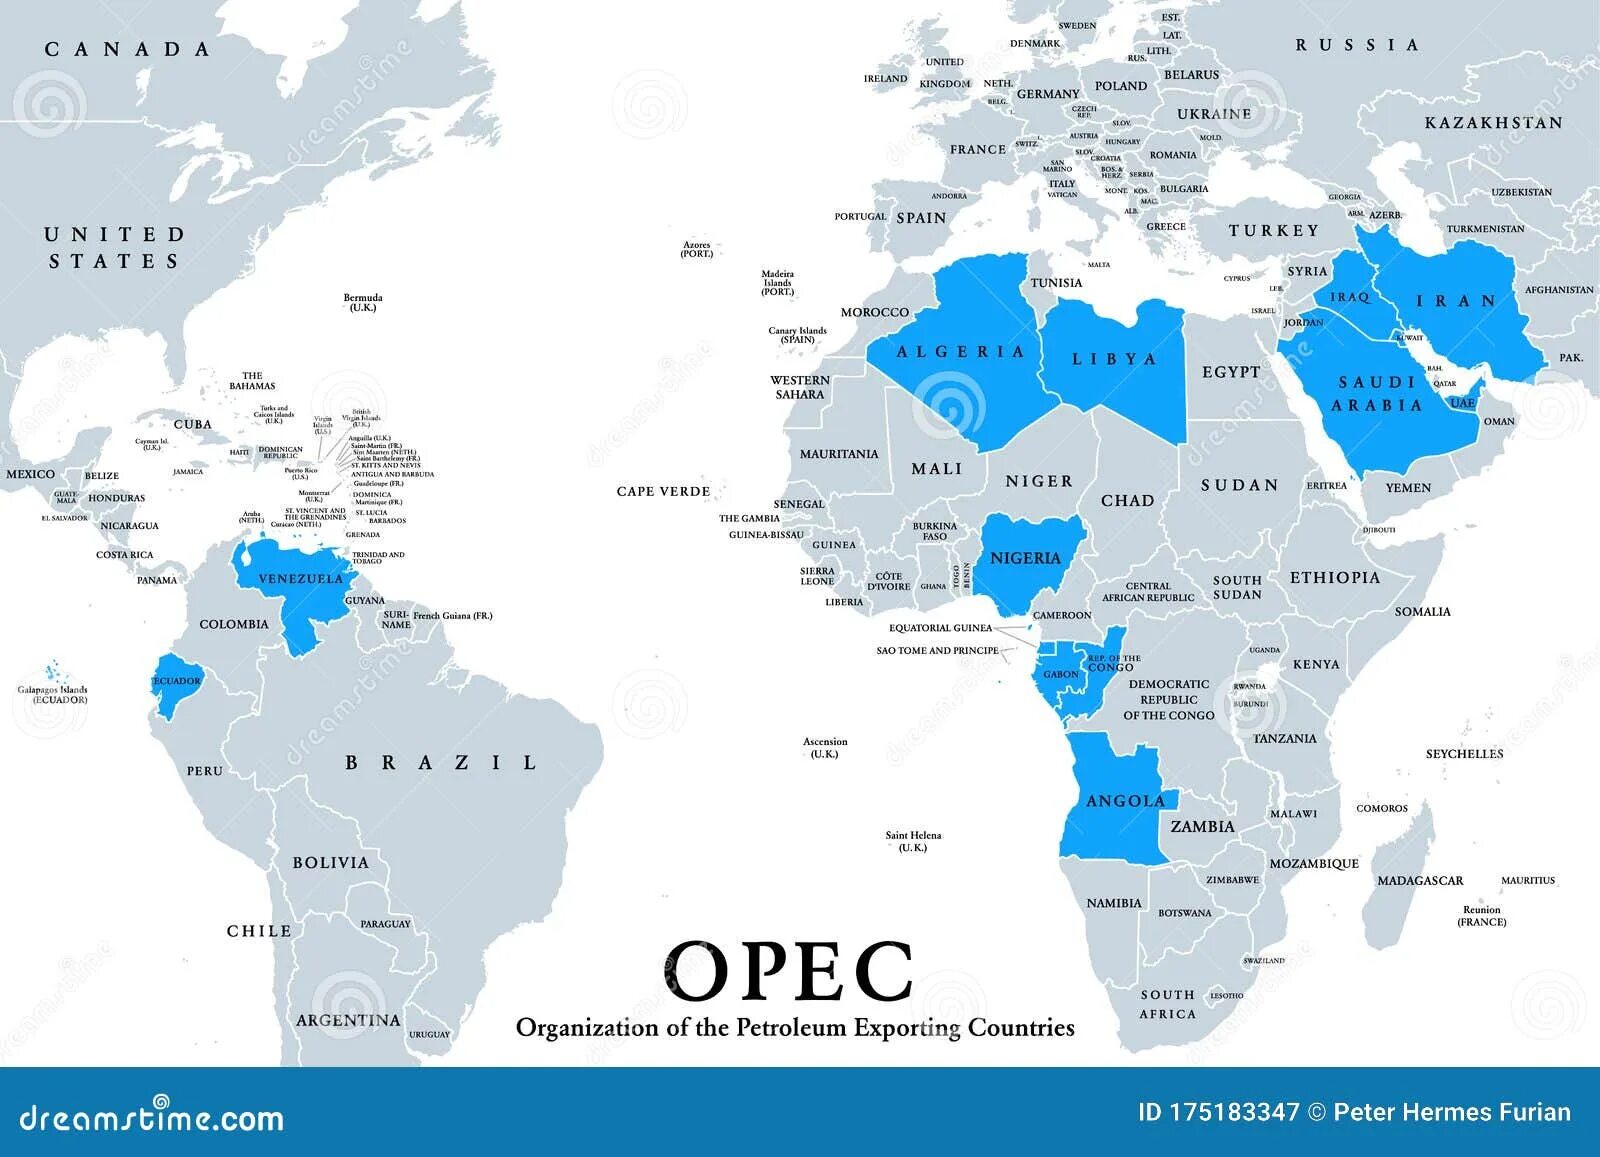 Перечислите страны опек. Организация стран – экспортеров нефти (ОПЕК) карта. Страны входящие в OPEC на 2022 год. Страны ОПЕК на контурной карте. Страны ОПЕК на карте 2022.